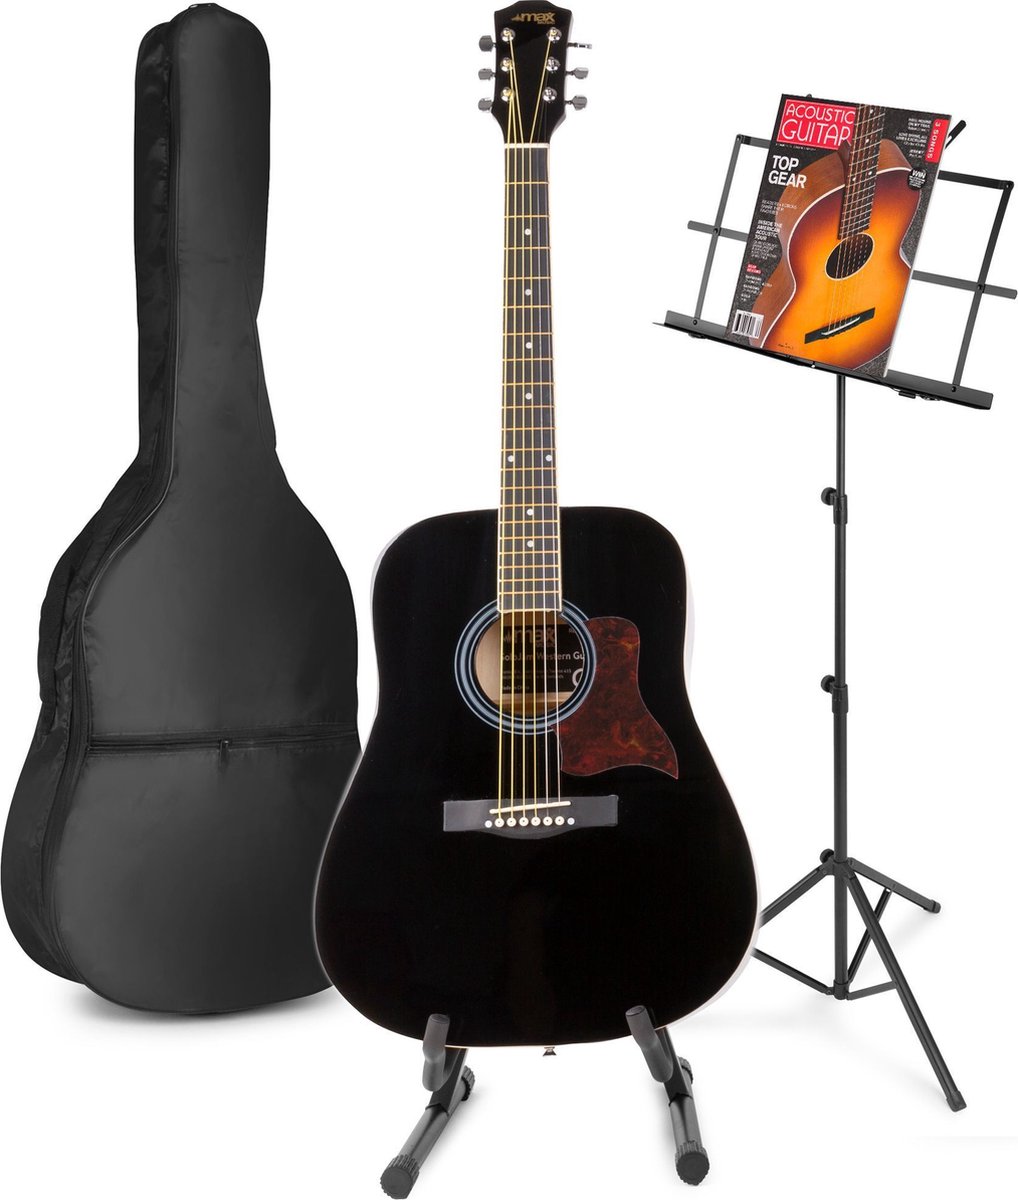 Akoestische gitaar voor beginners - MAX SoloJam Western gitaar - Incl. gitaar standaard, muziekstandaard, gitaar stemapparaat, gitaartas en 2x plectrum - Zwart